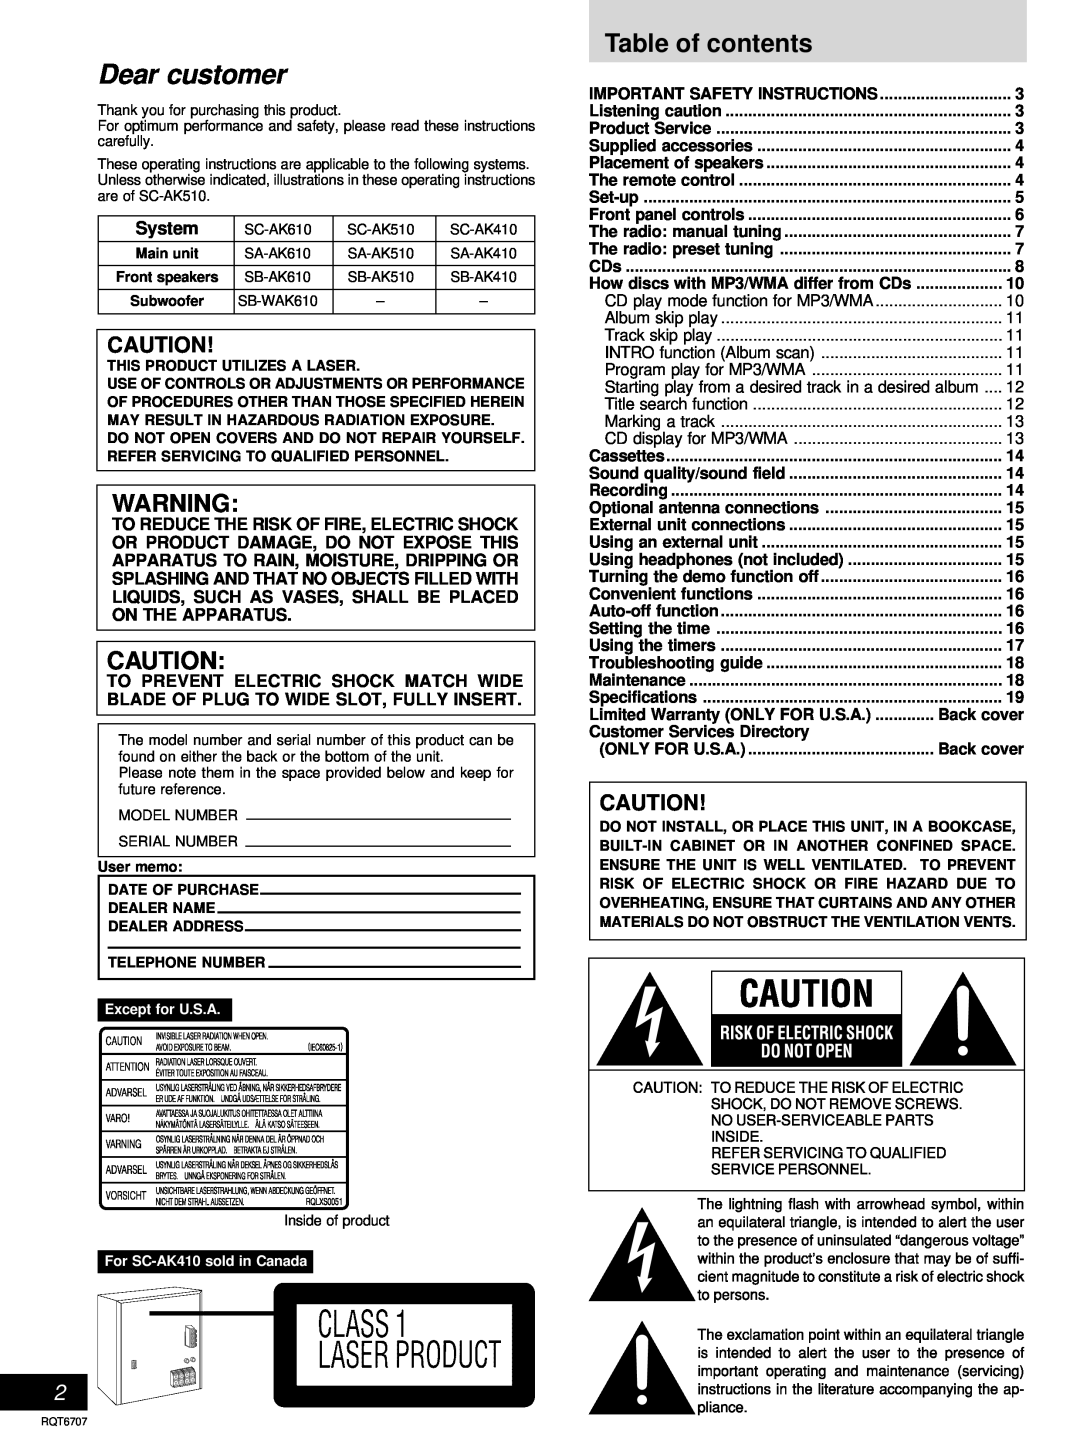 Panasonic SC-AK410, SC-AK510 manual Table of contents, System 